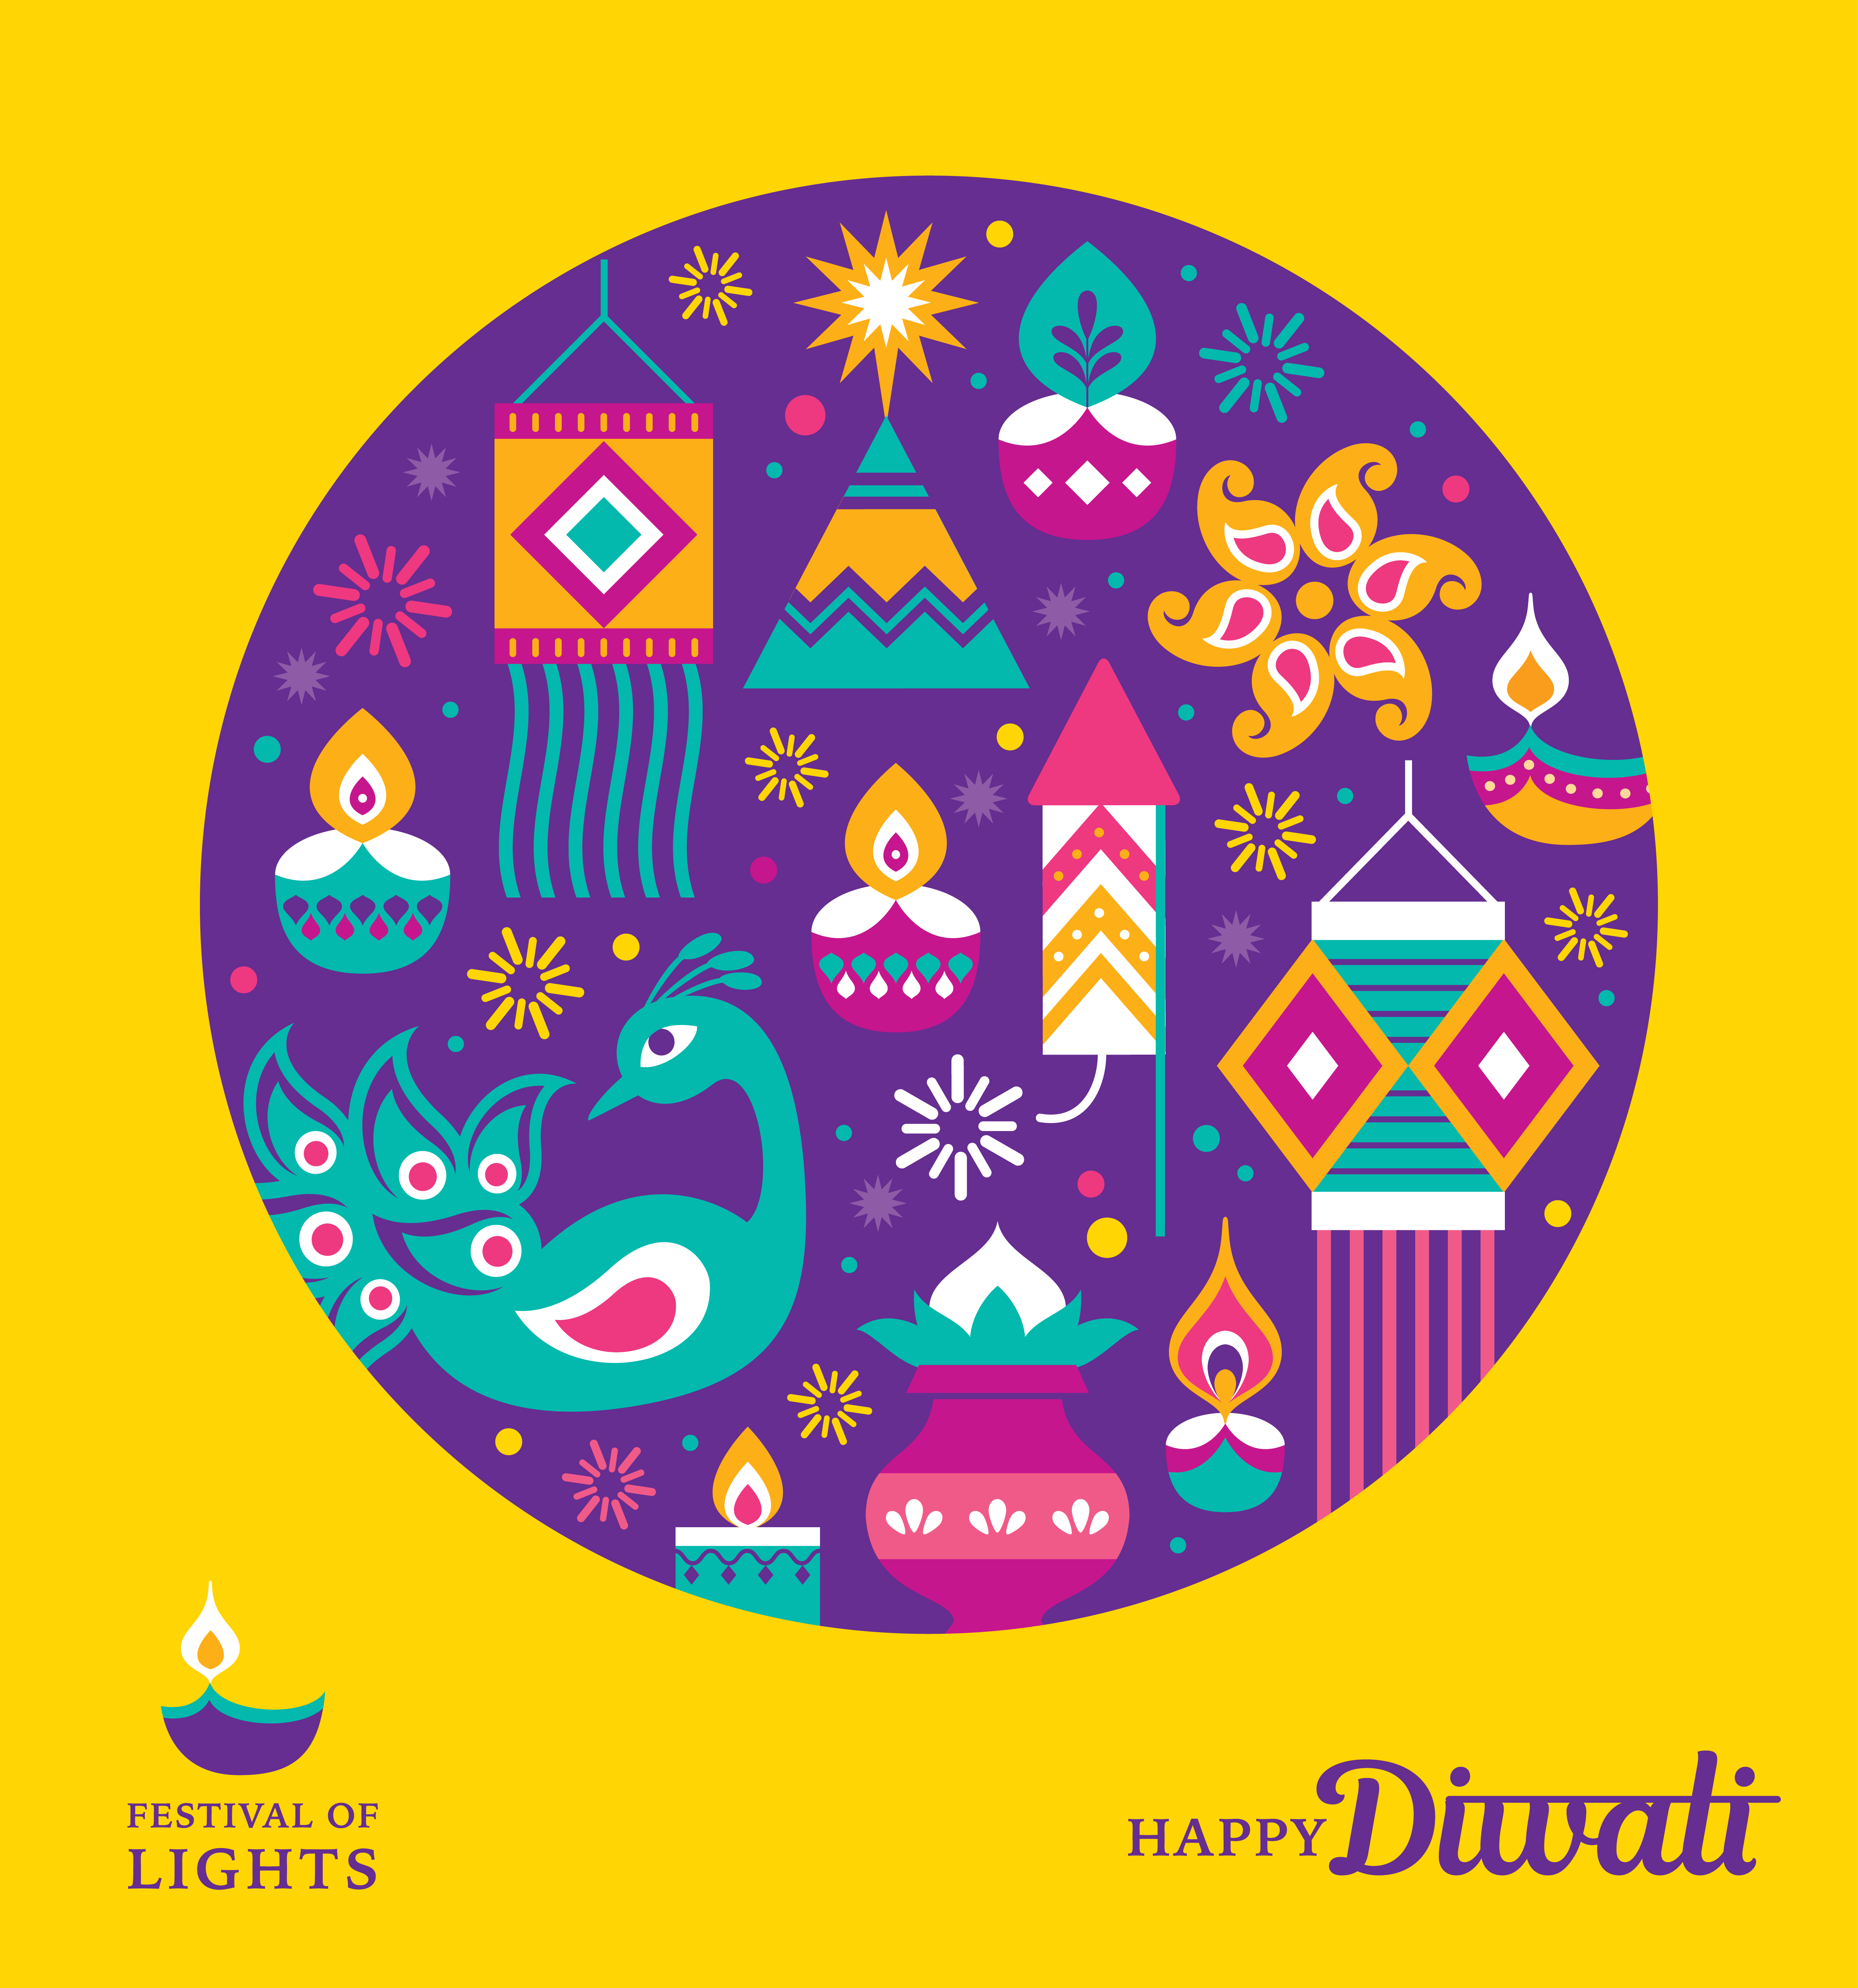 Happy diwali background design vectors 01